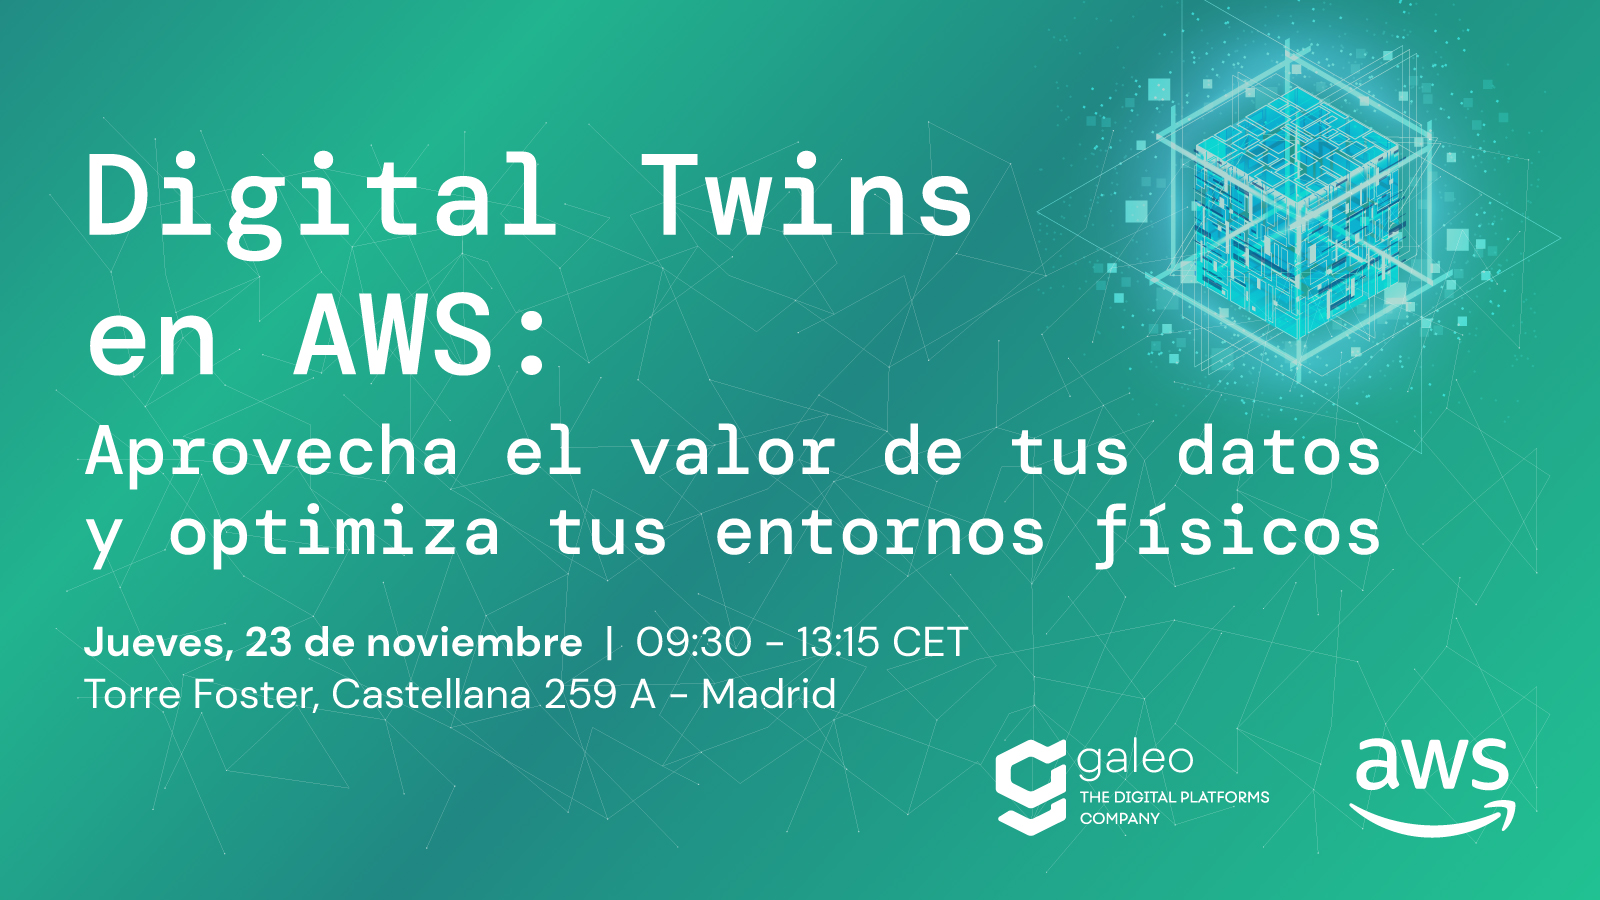 Digital Twins en Galeo y Amazon Web Services: Aprovechando el Valor de los Datos para Optimizar los Entornos Físicos